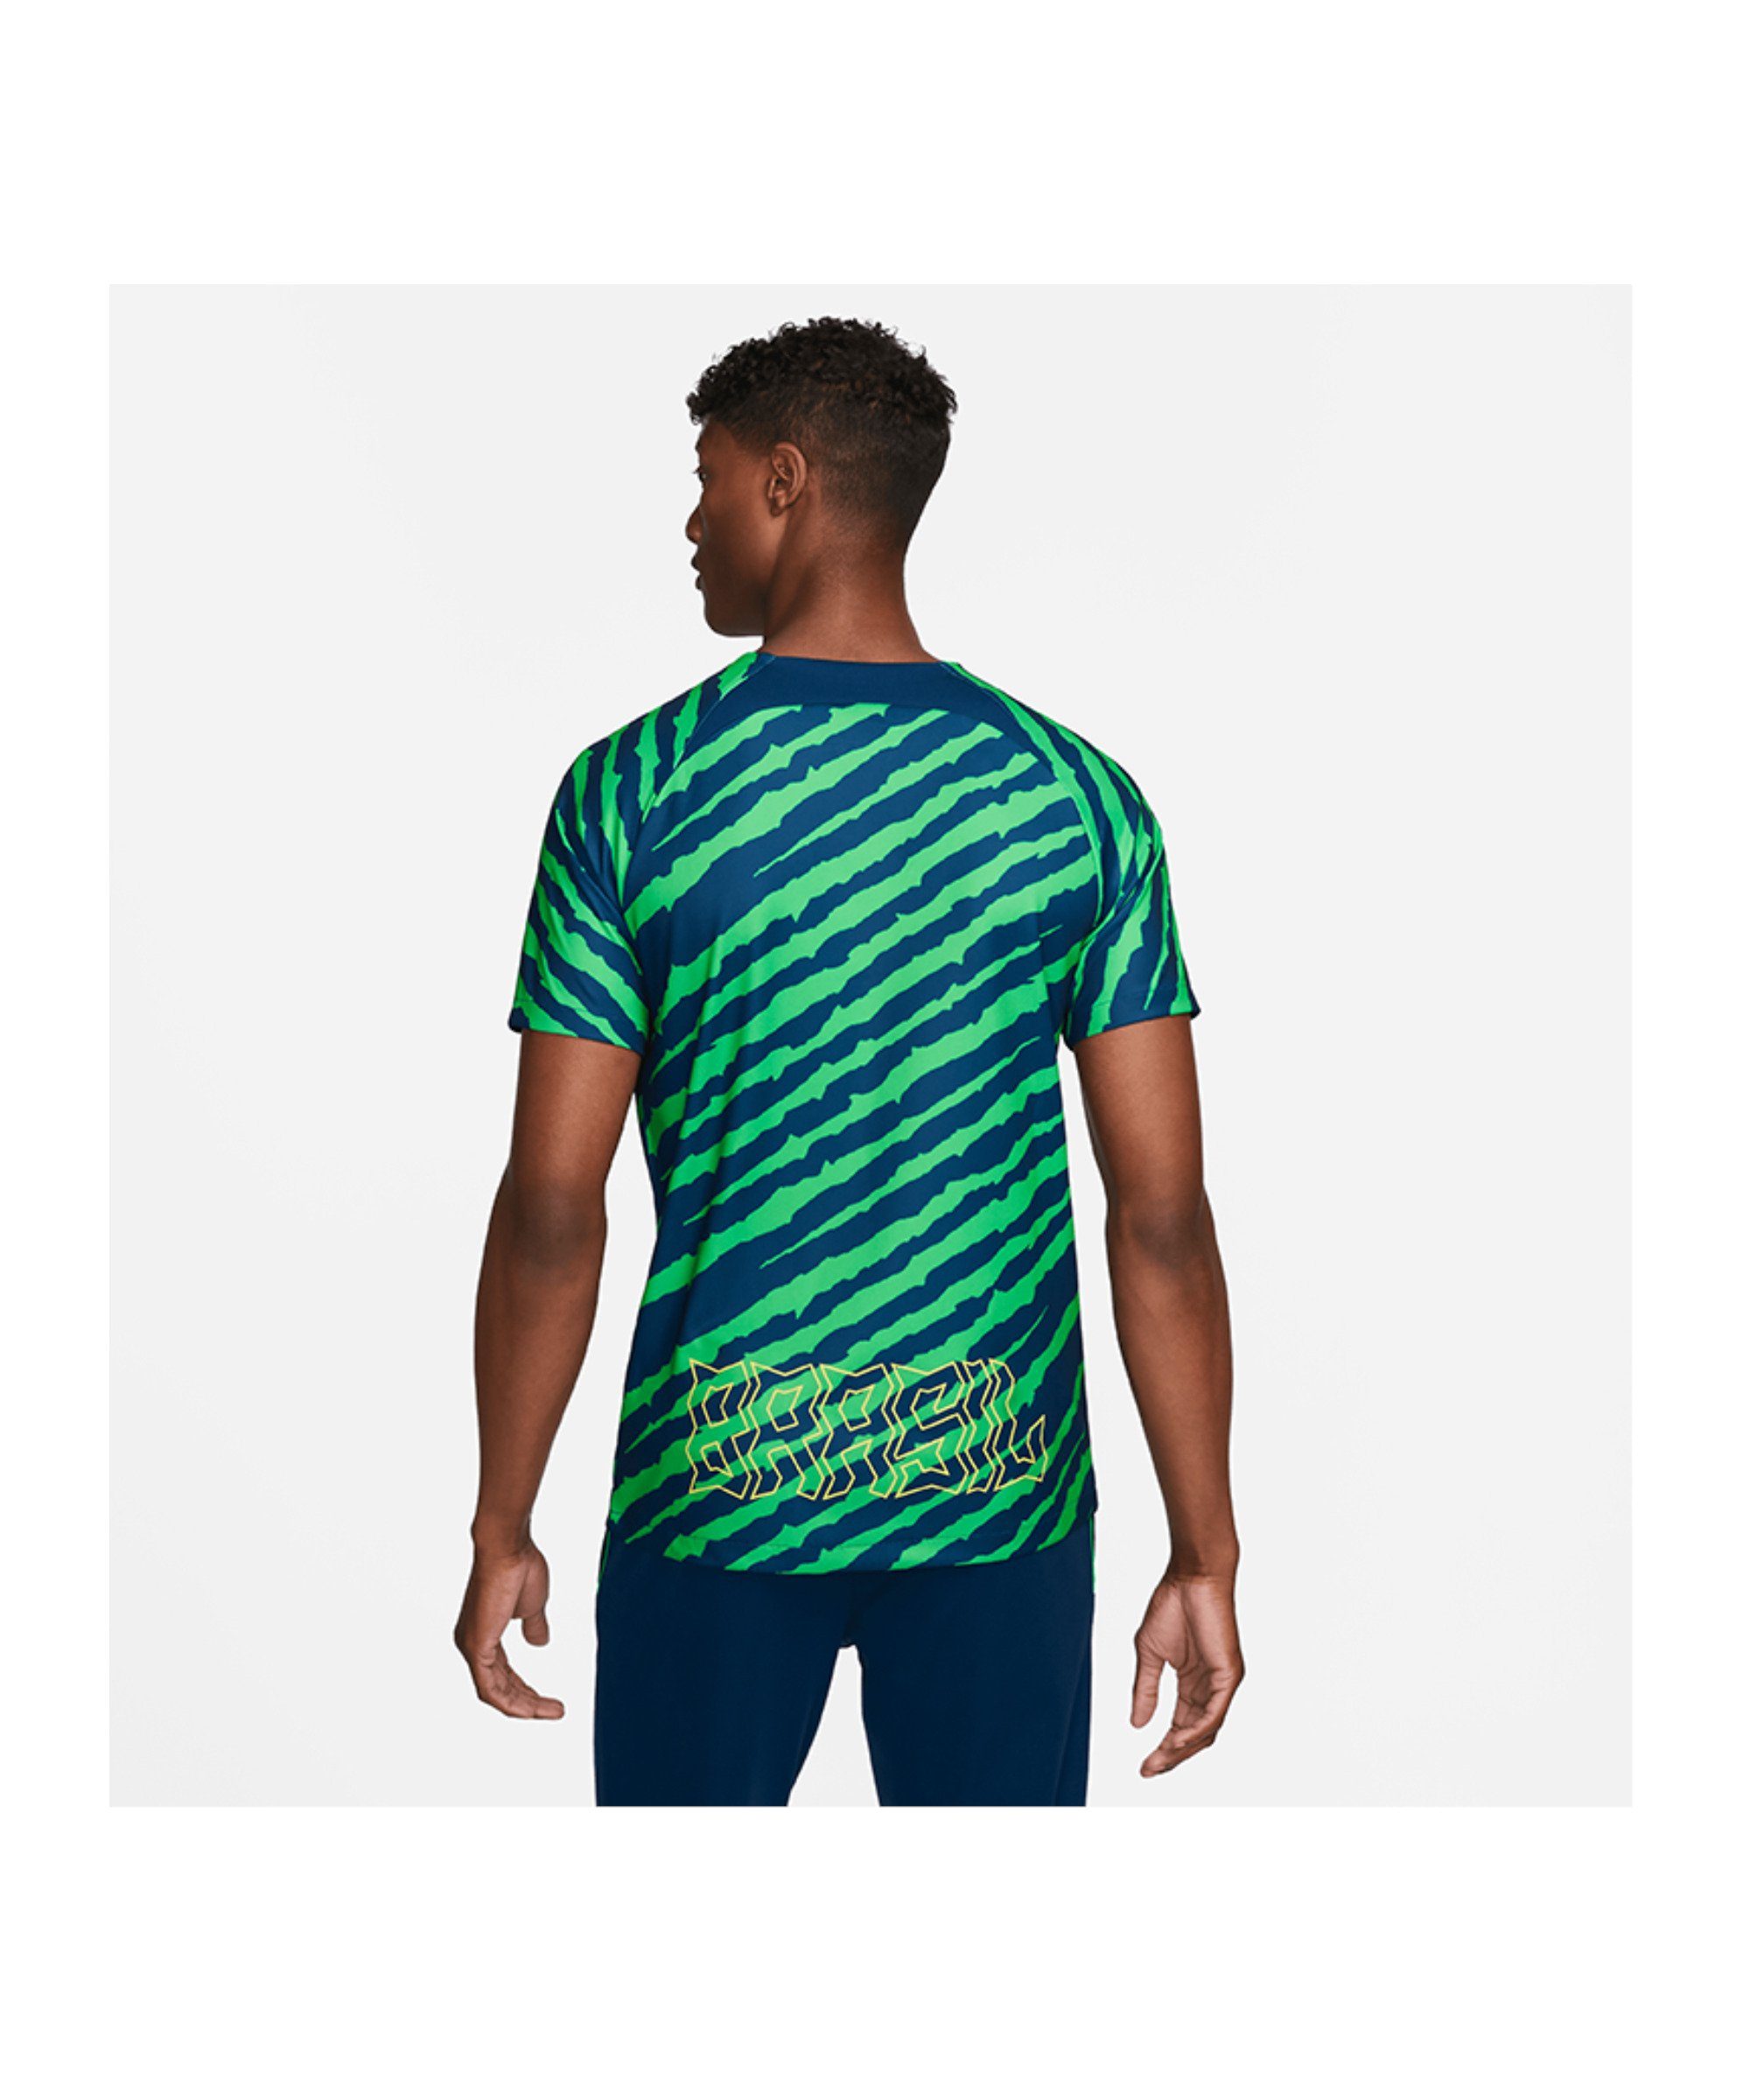 https://i.otto.de/i/otto/9c9c181e-e600-54f4-817b-1bfdc0eb1e5e/nike-t-shirt-brasilien-trainingsshirt-default.jpg?$formatz$